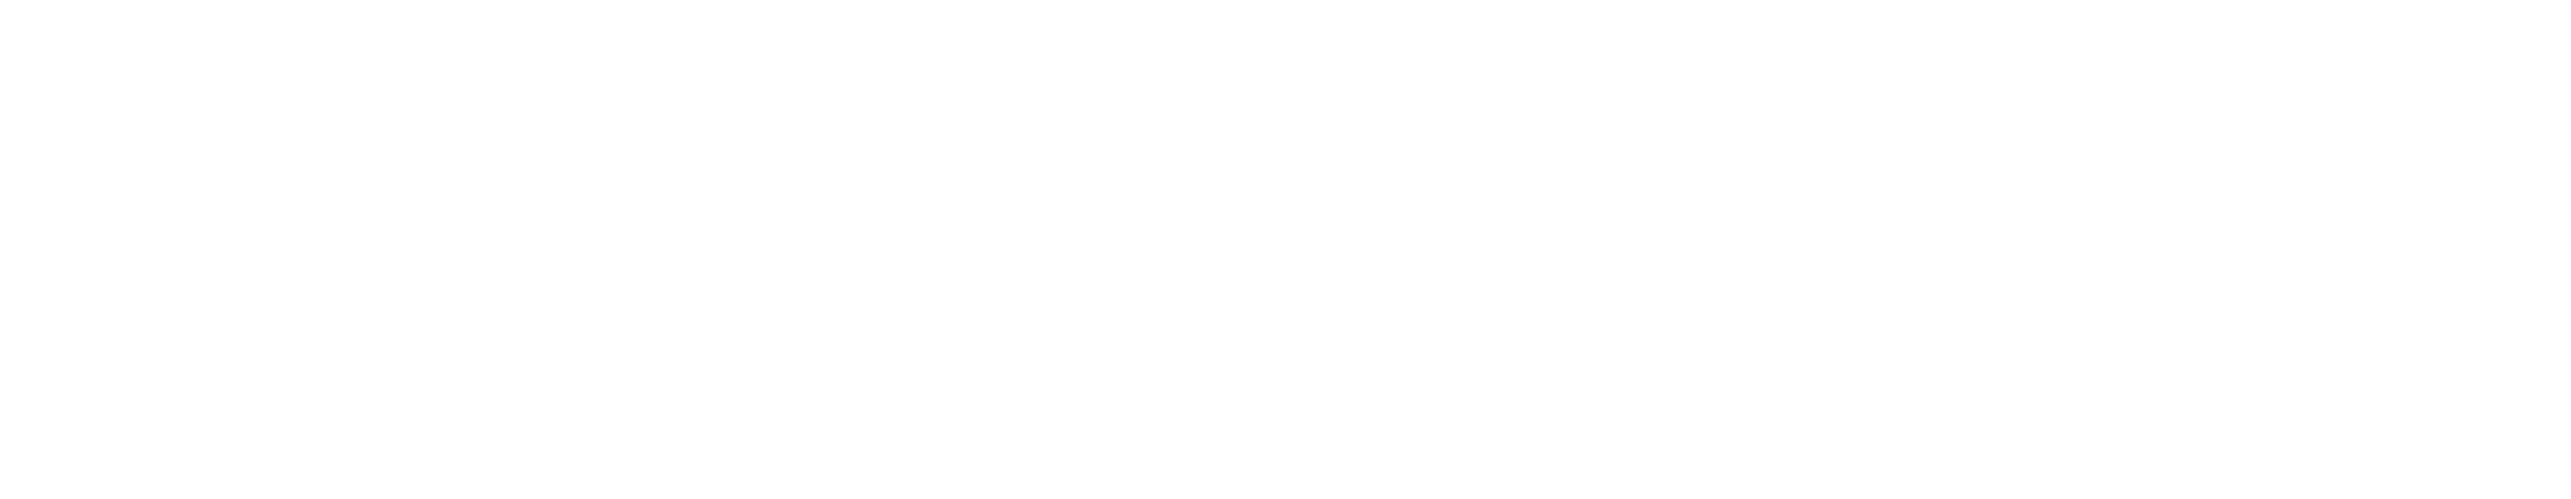 Catholic white logo